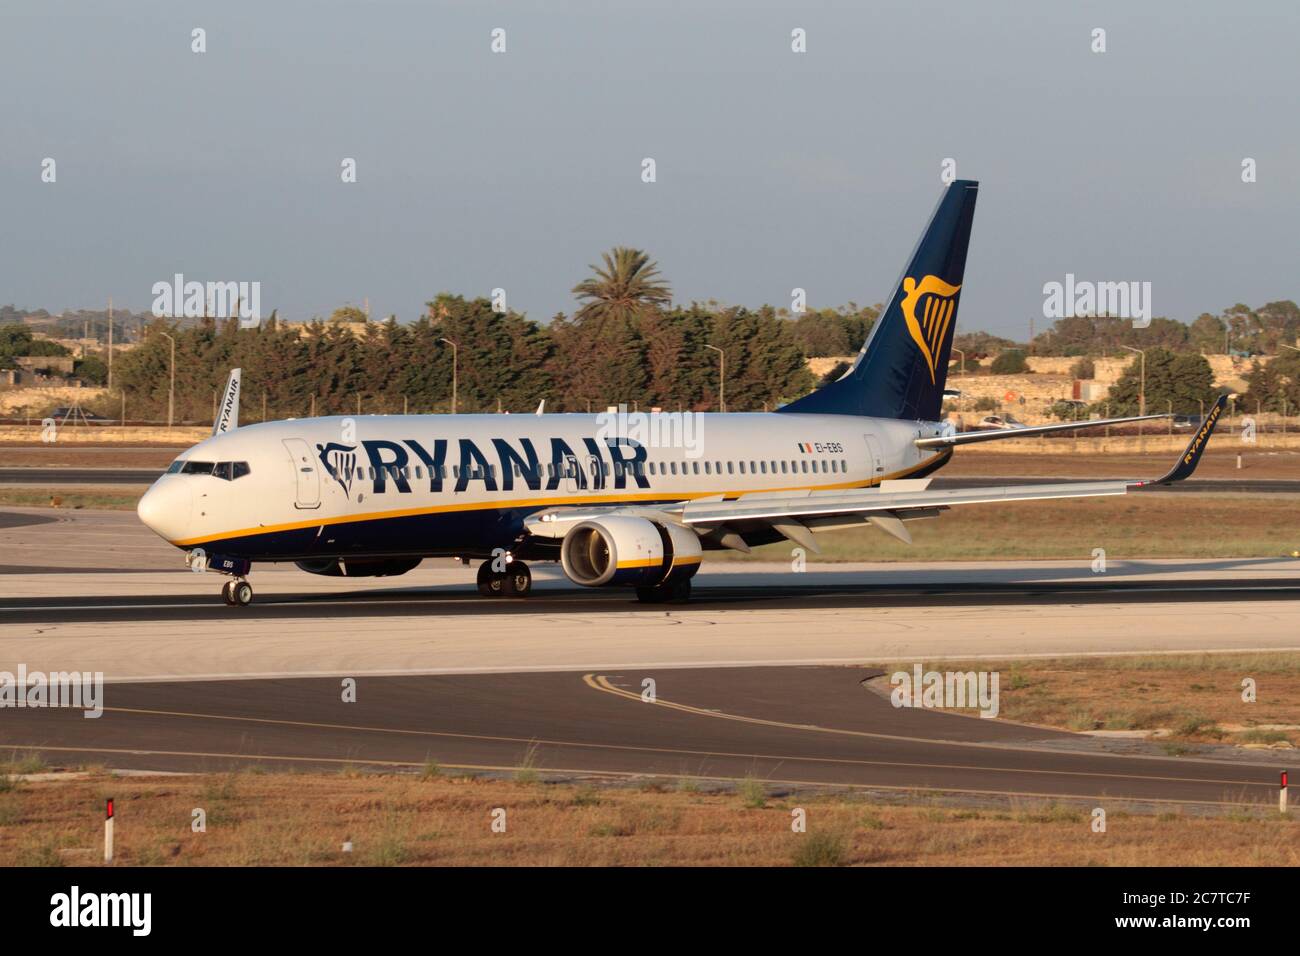 Ryanair-Flugzeug. Boeing 737-800 Passagierjet Flugzeug von Low-Cost-Fluggesellschaft Ryan Air auf der Landebahn nach der Ankunft in Malta geflogen Stockfoto